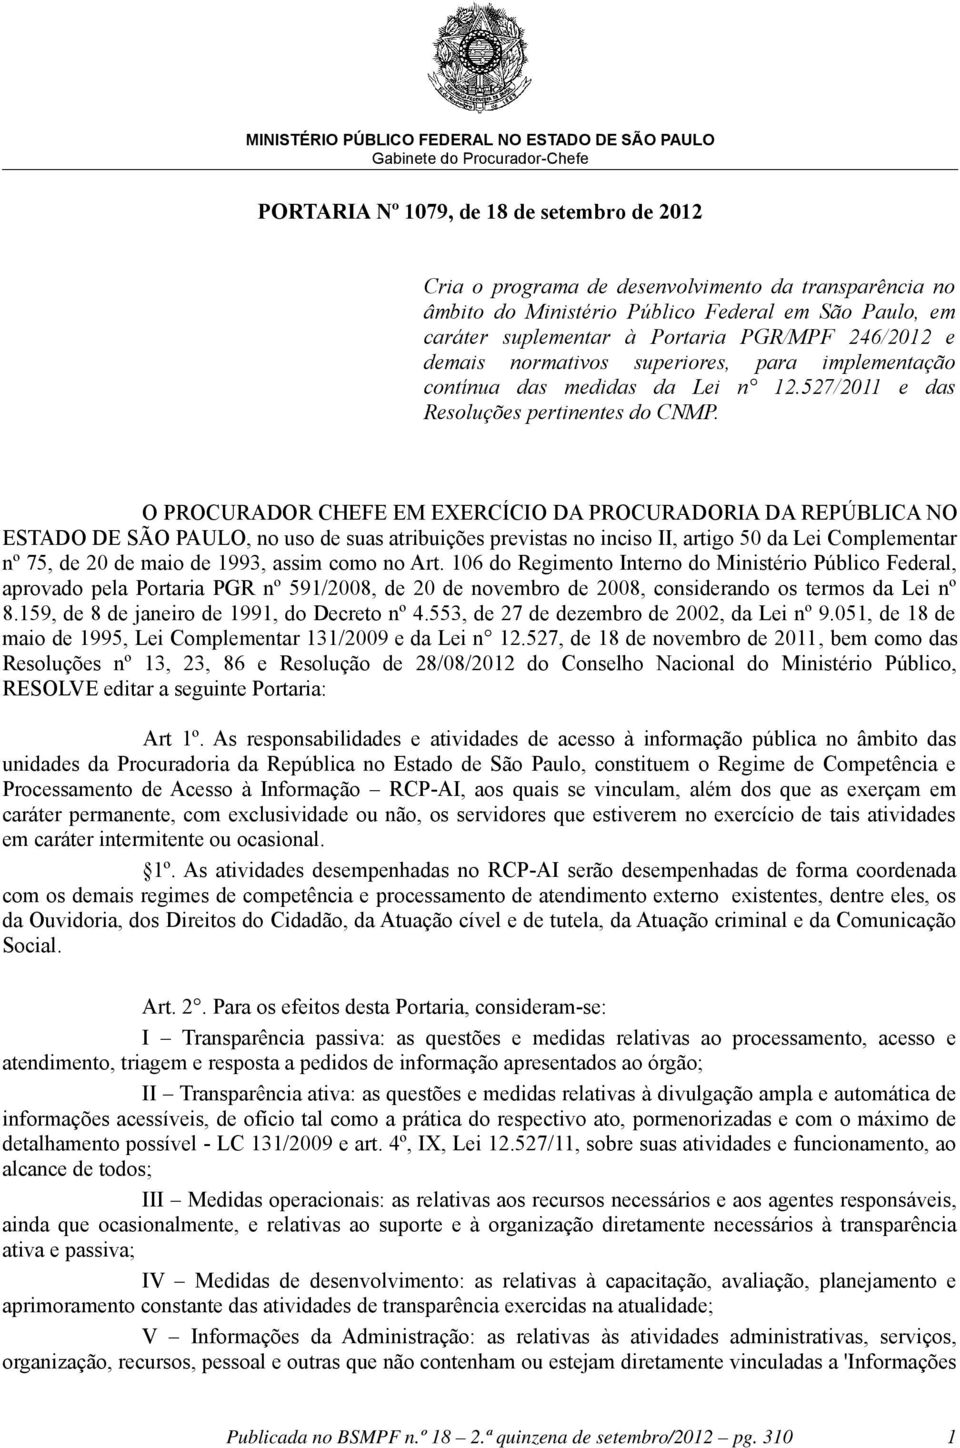 O PROCURADOR CHEFE EM EXERCÍCIO DA PROCURADORIA DA REPÚBLICA NO ESTADO DE SÃO PAULO, no uso de suas atribuições previstas no inciso II, artigo 50 da Lei Complementar nº 75, de 20 de maio de 1993,